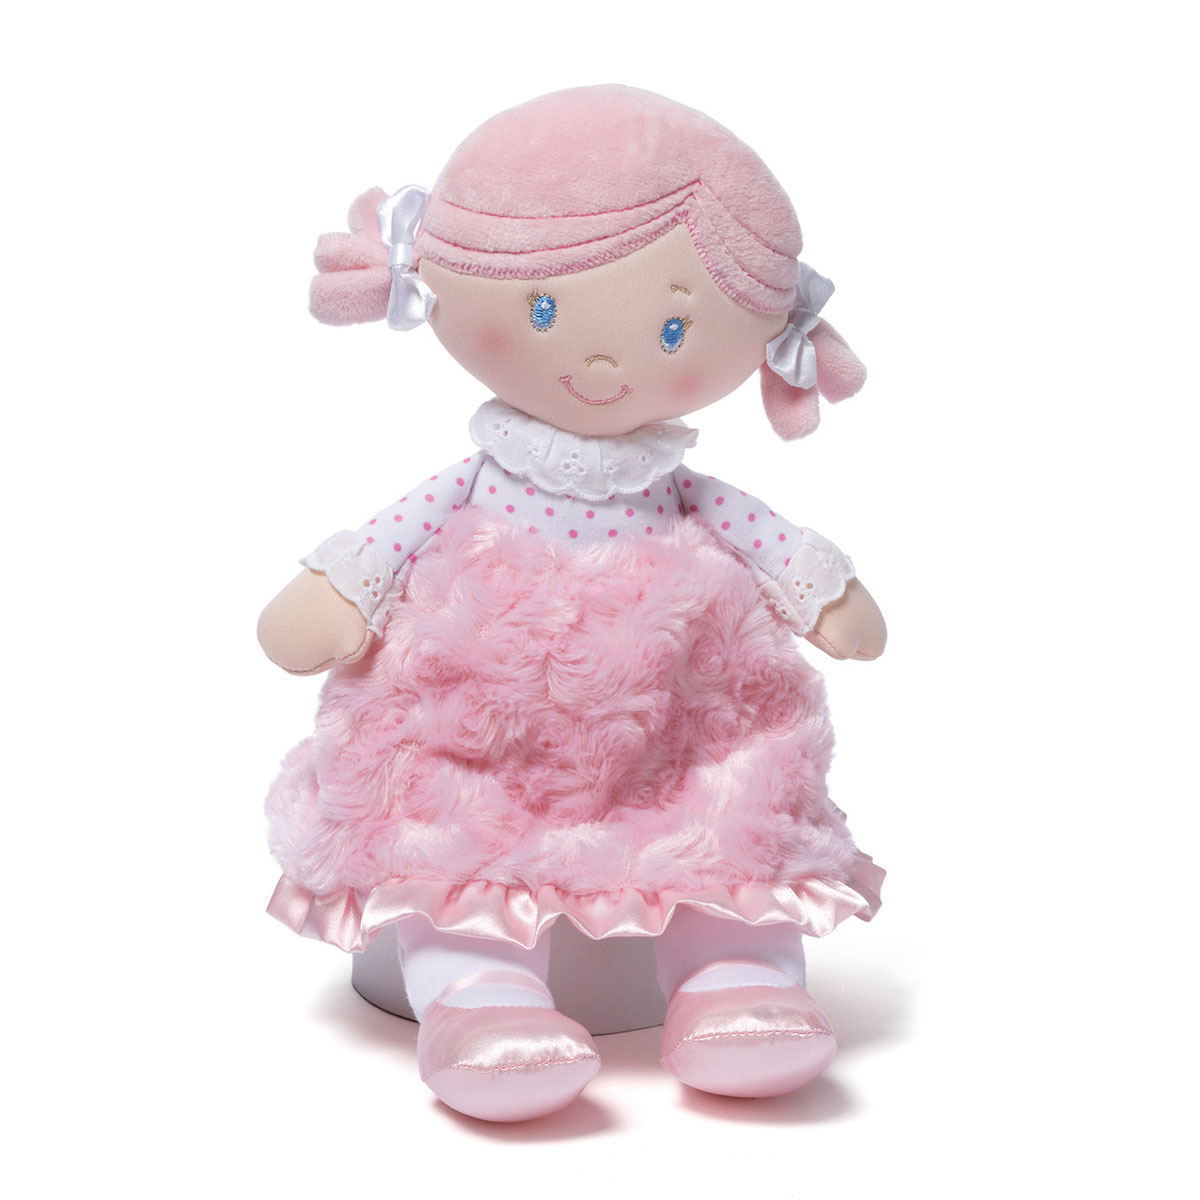 ガンド GUND baby GUND 人形 ドール ぬいぐるみ 4048406 セリアドール 女の子 おもちゃ 知育玩具 女の子の人形 ドール ぬいぐるみ 誕生日